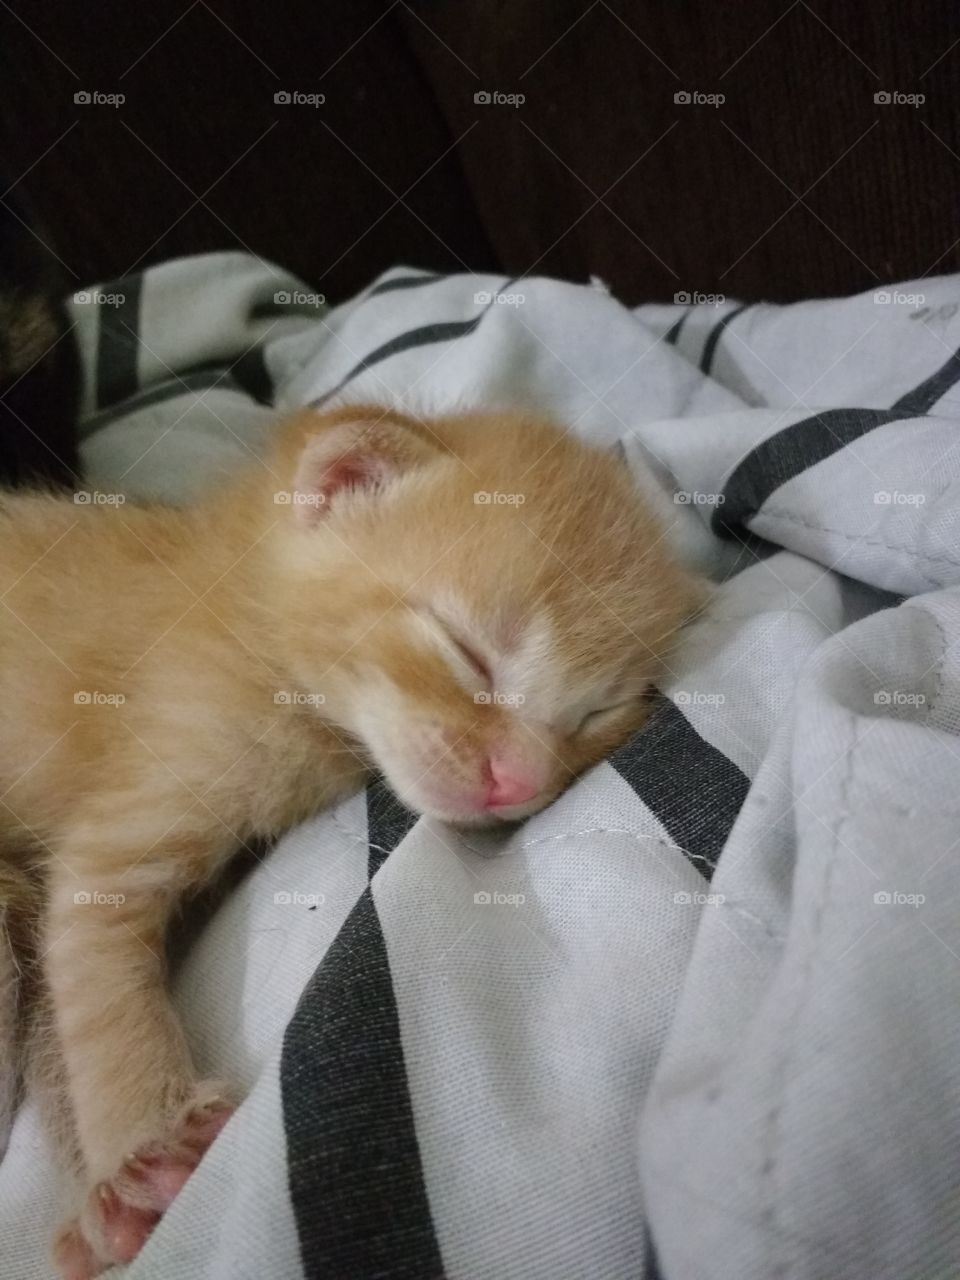 kitten sleeping